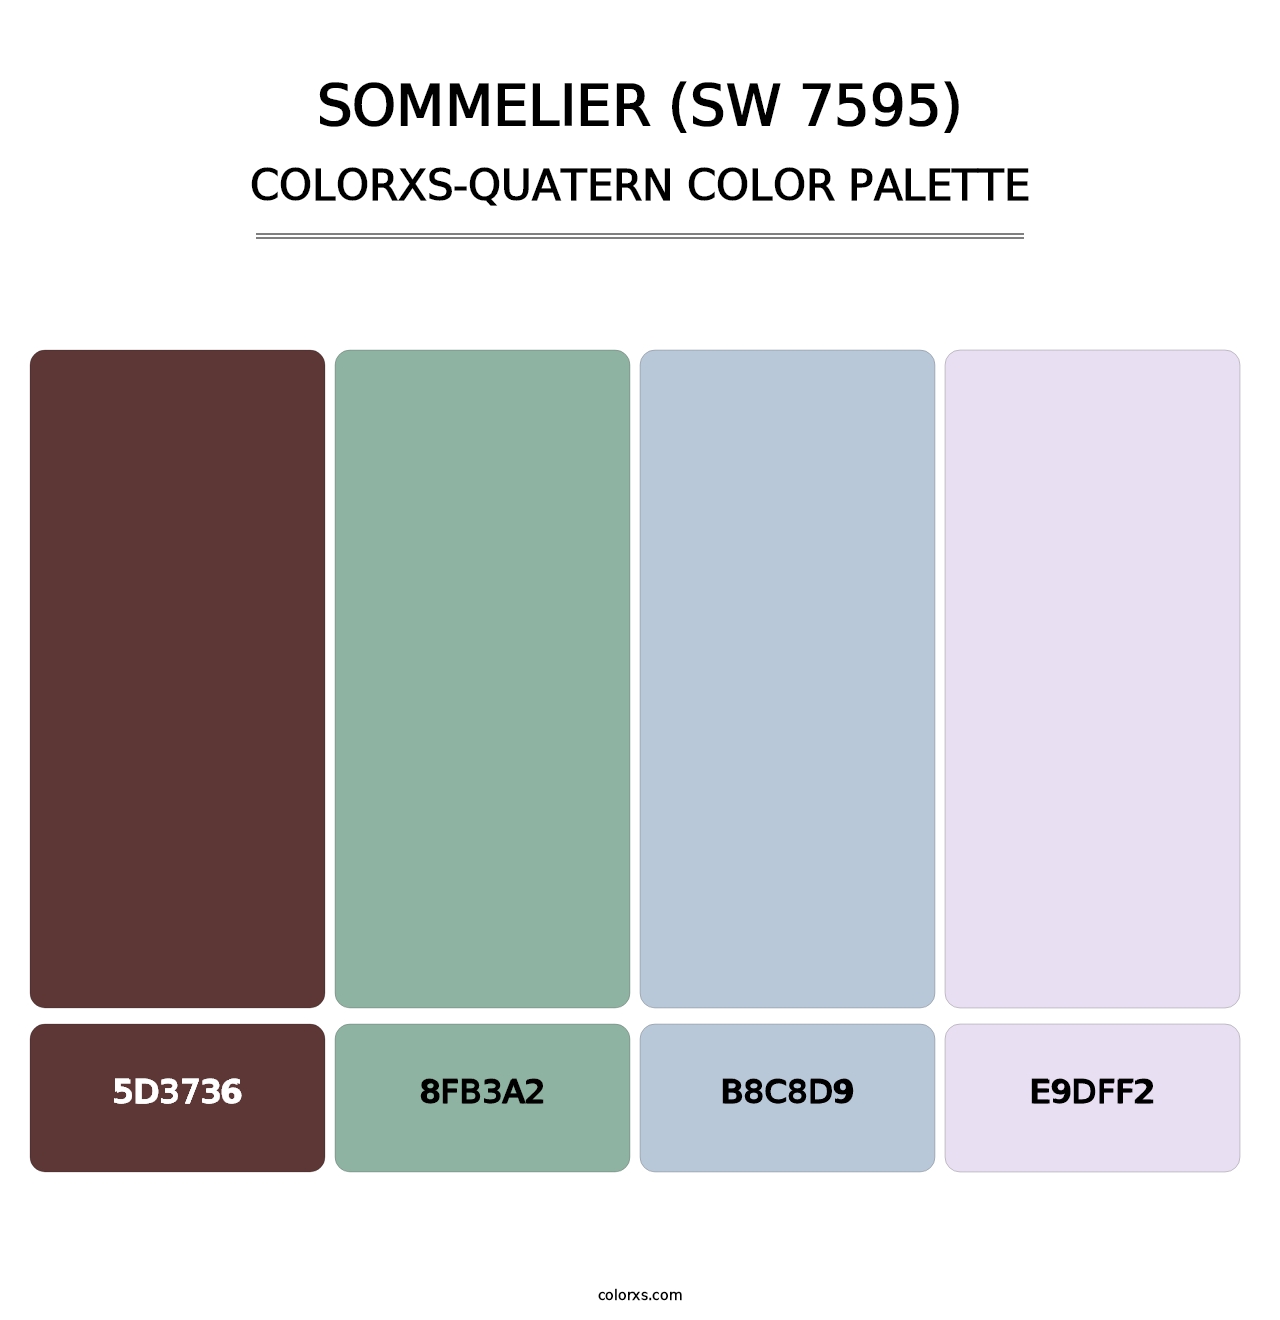 Sommelier (SW 7595) - Colorxs Quatern Palette